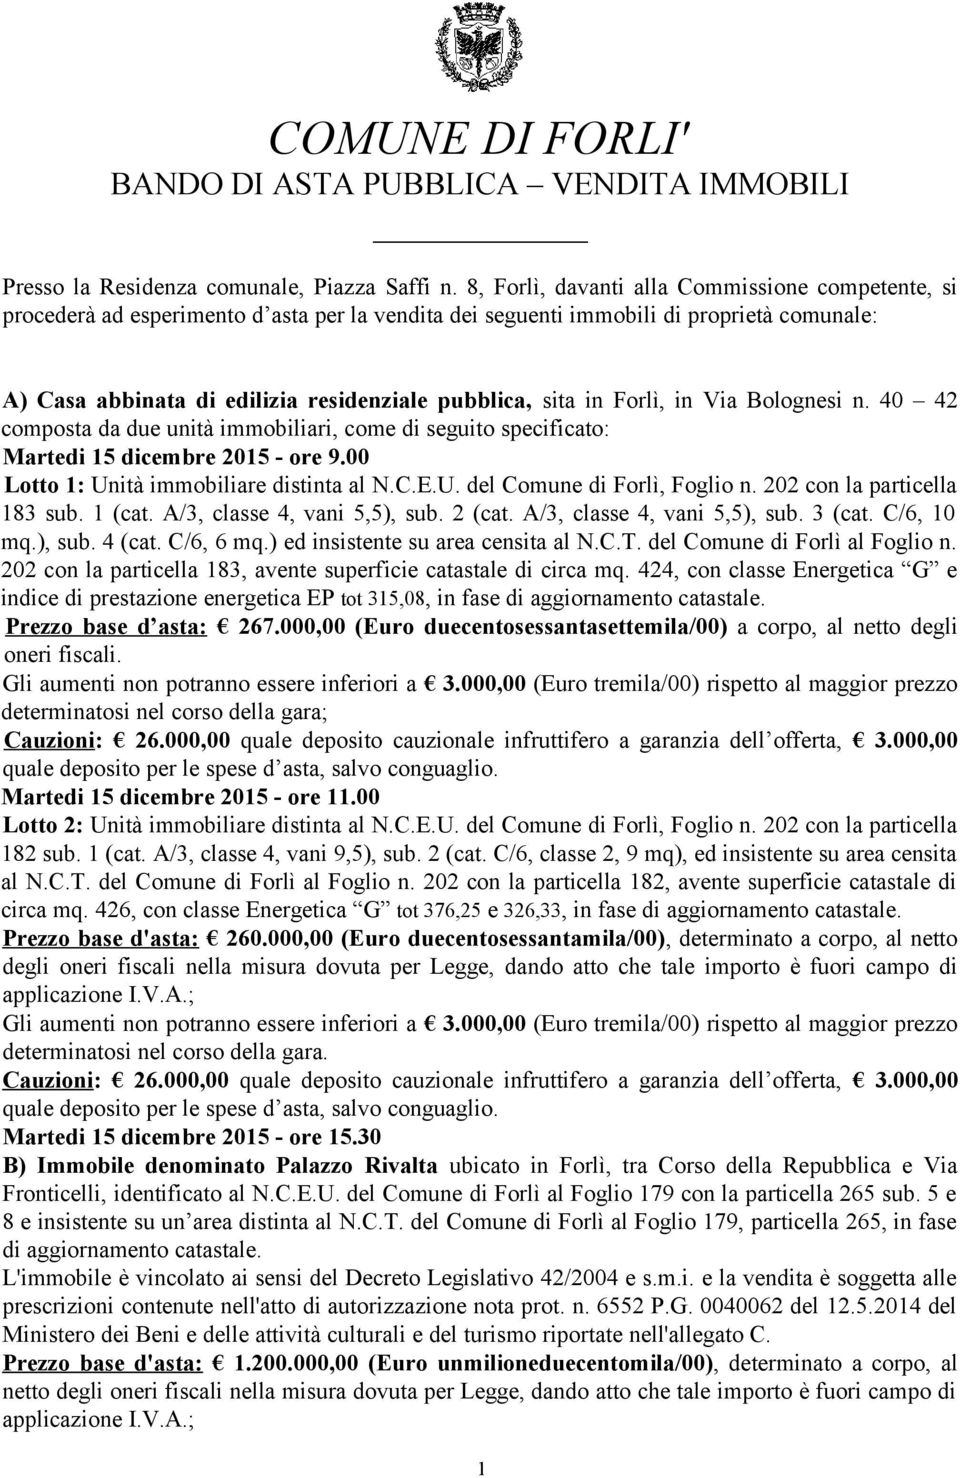 in Forlì, in Via Bolognesi n. 40 42 composta da due unità immobiliari, come di seguito specificato: Martedi 15 dicembre 2015 - ore 9.00 Lotto 1: Unità immobiliare distinta al N.C.E.U. del Comune di Forlì, Foglio n.